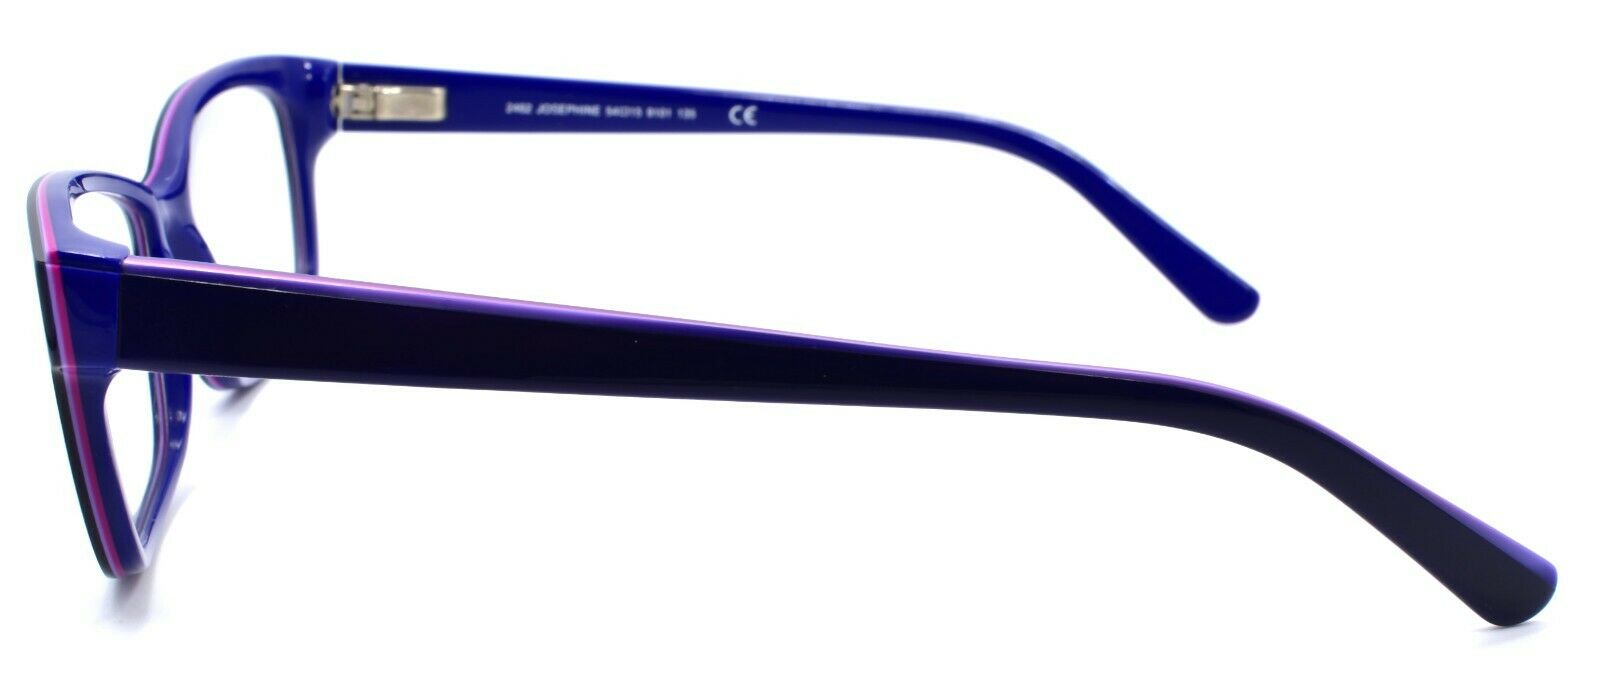 3-Skaga 2462 Josephine 9101 Women's Eyeglasses Frames 54-15-135 Blue-IKSpecs